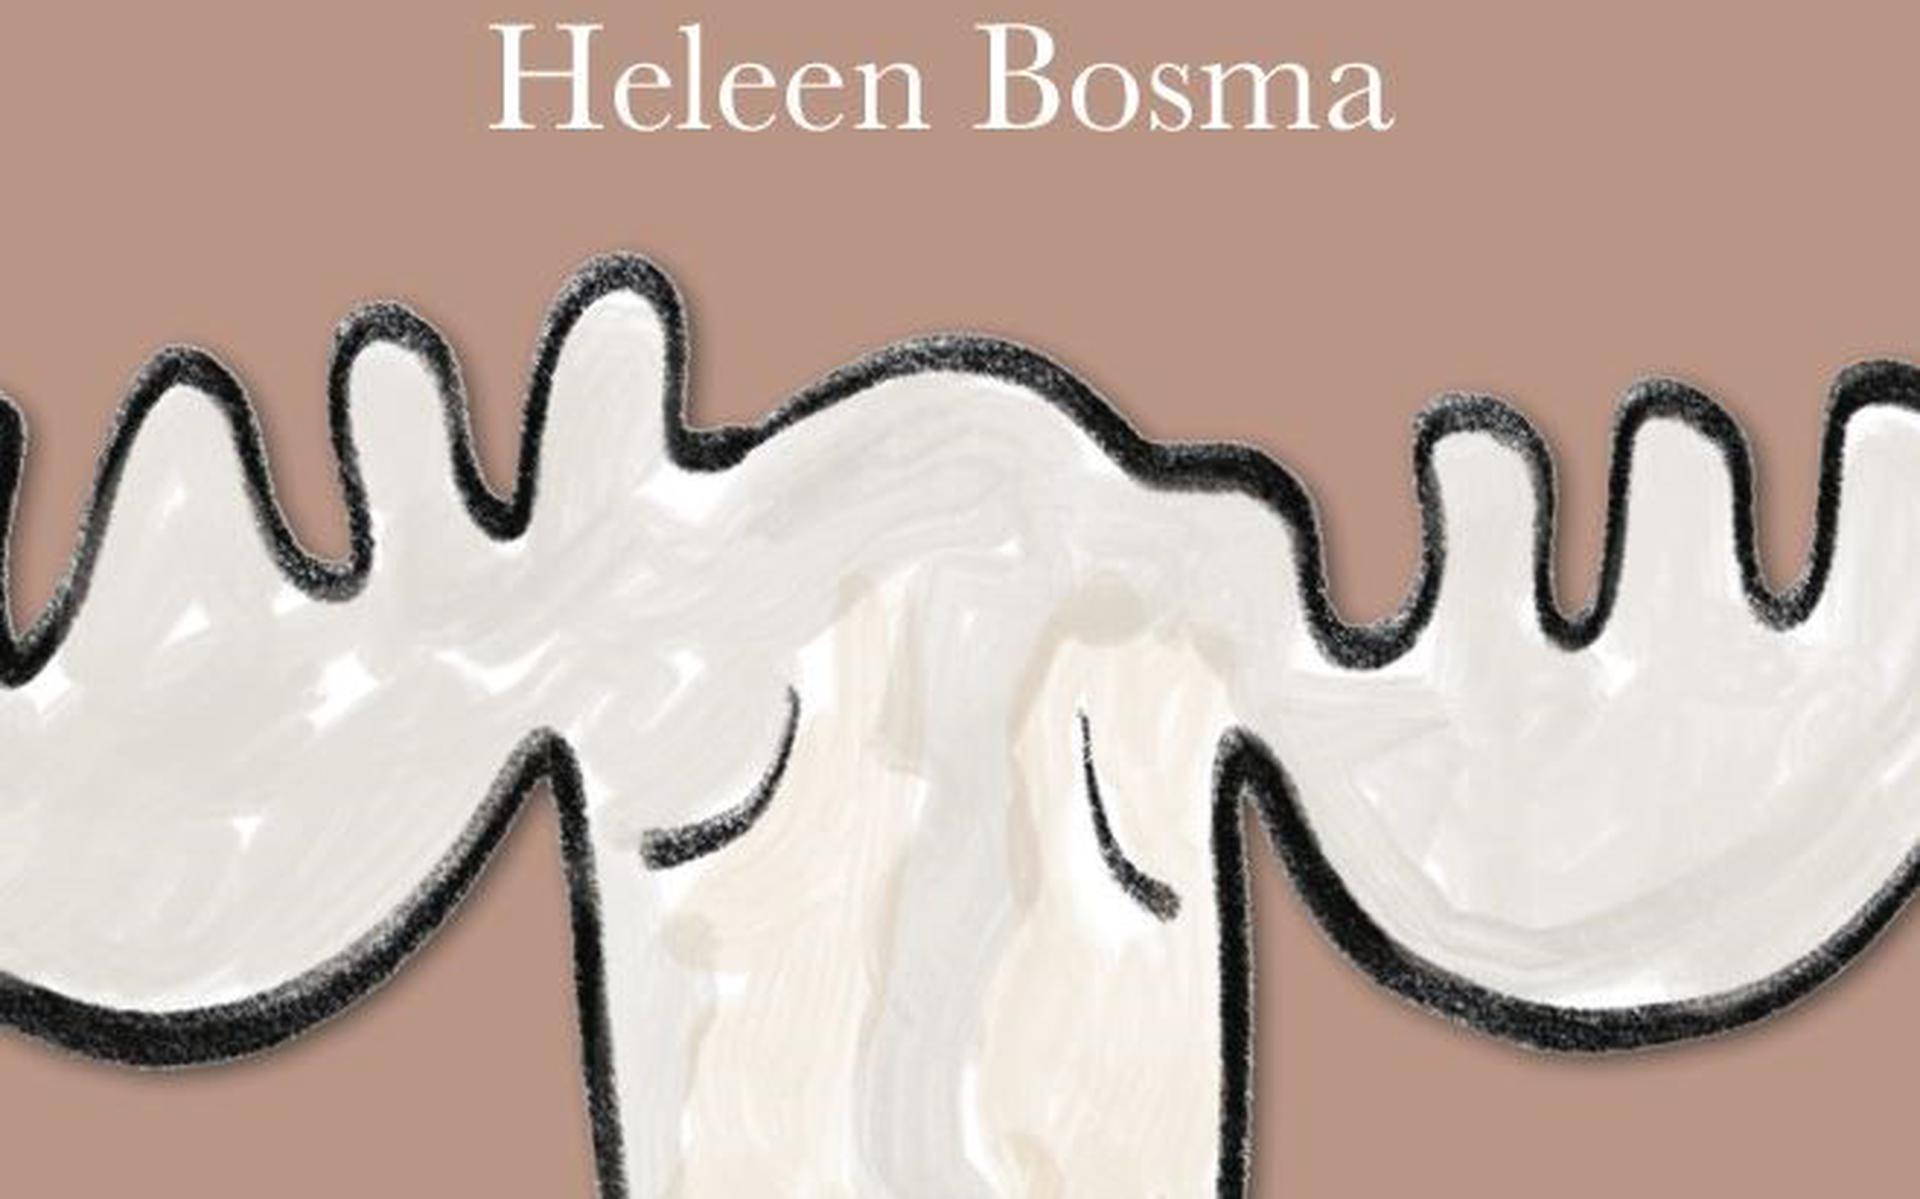 Vervang eland is de nieuwe poëziebundel van Heleen Bosma. 